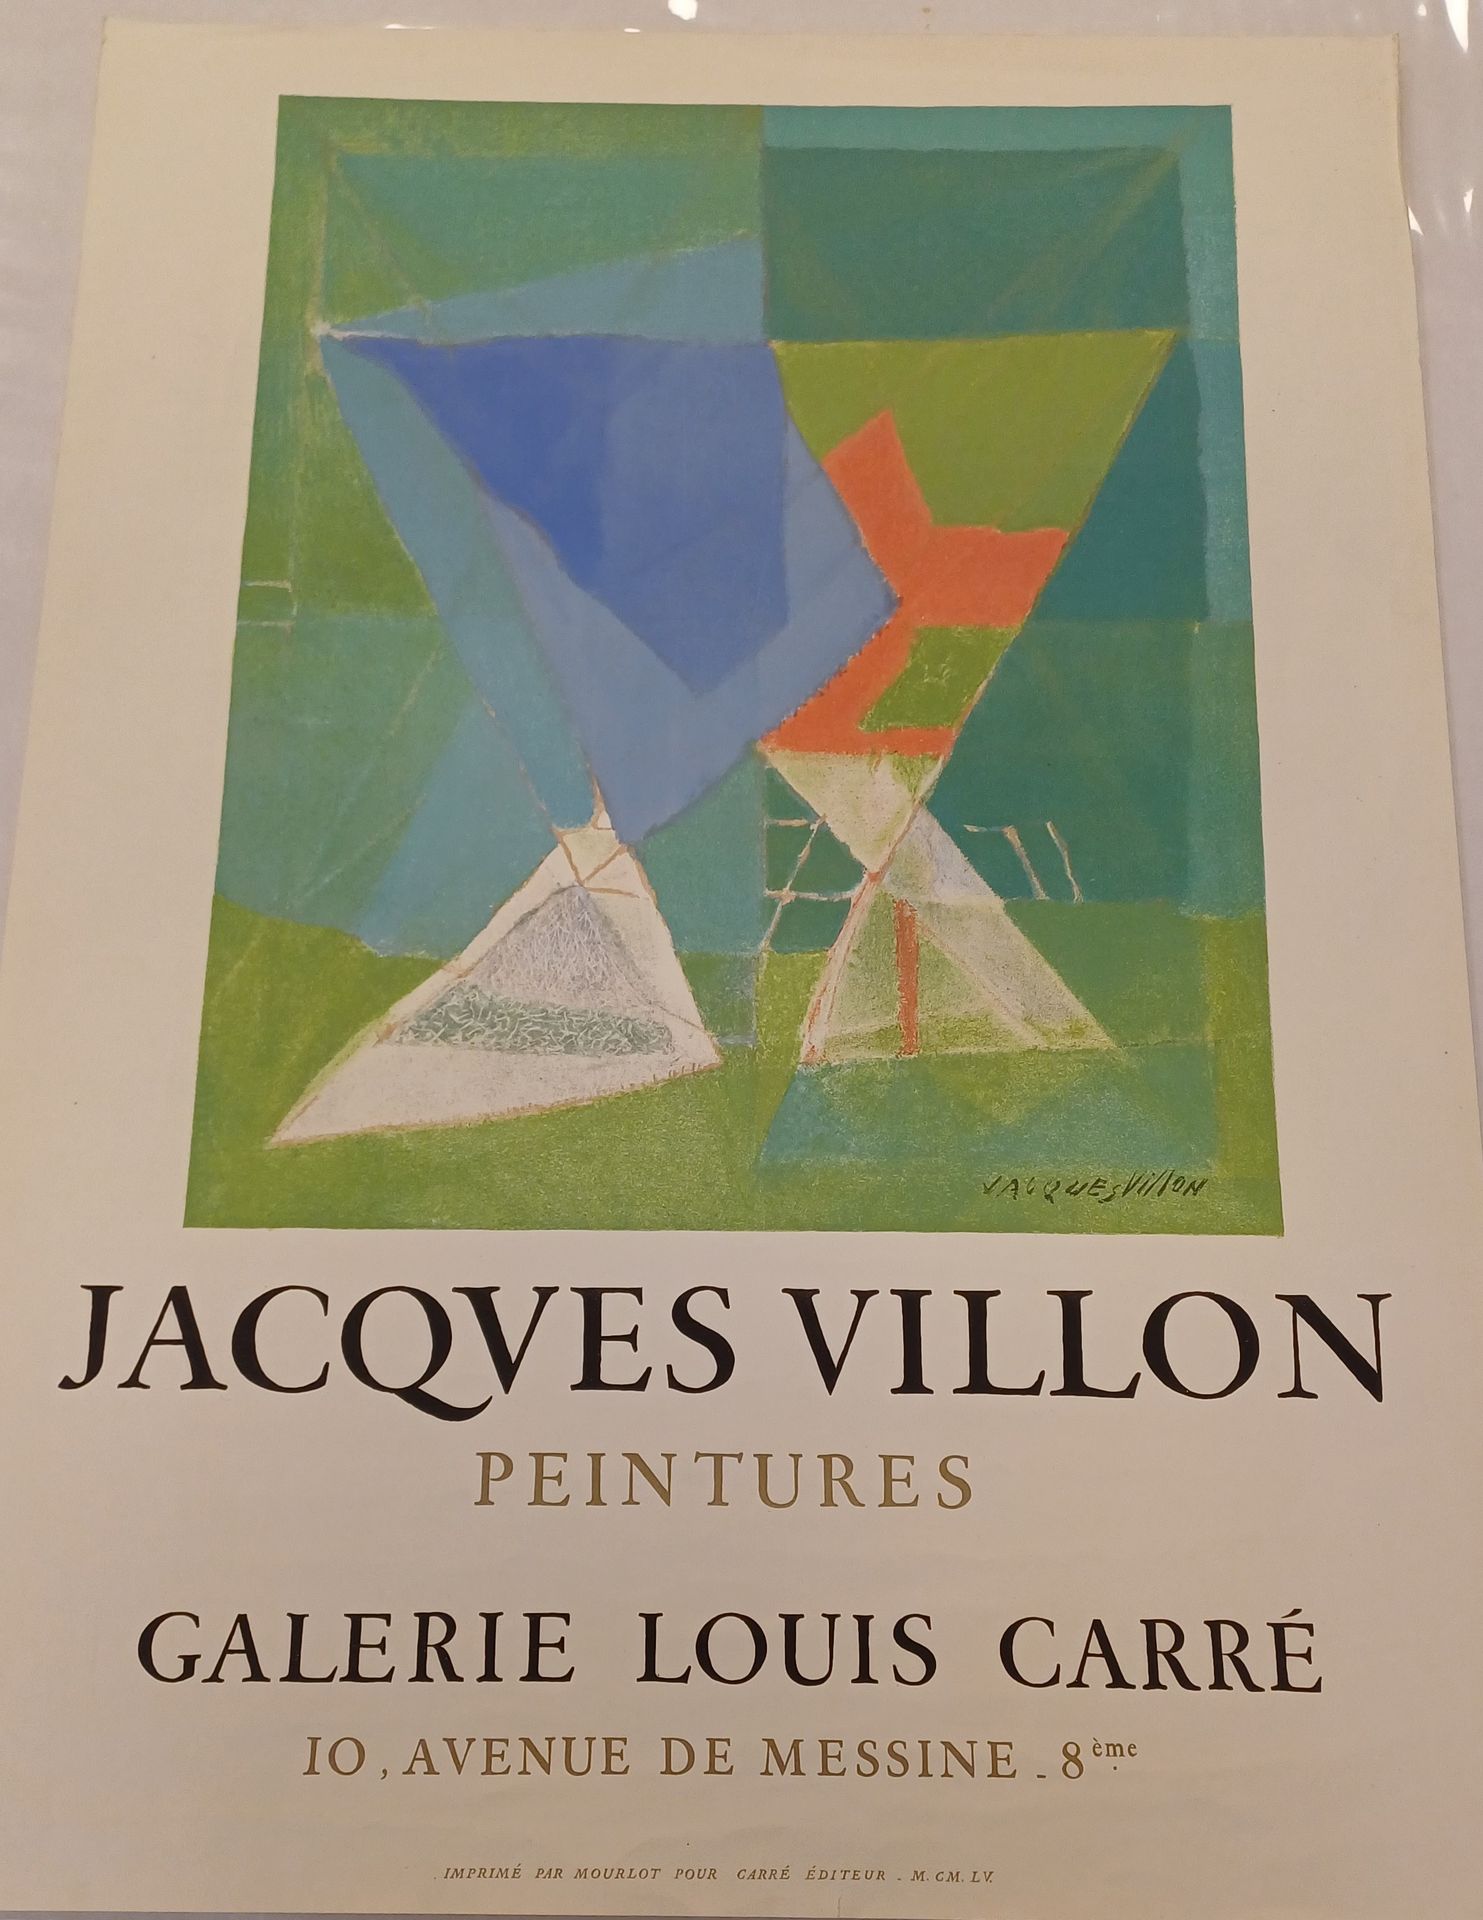 Jacques Villon Affiche Jacques Villon
Galerie Louis Carré
1955. 71 x 51,5 cm